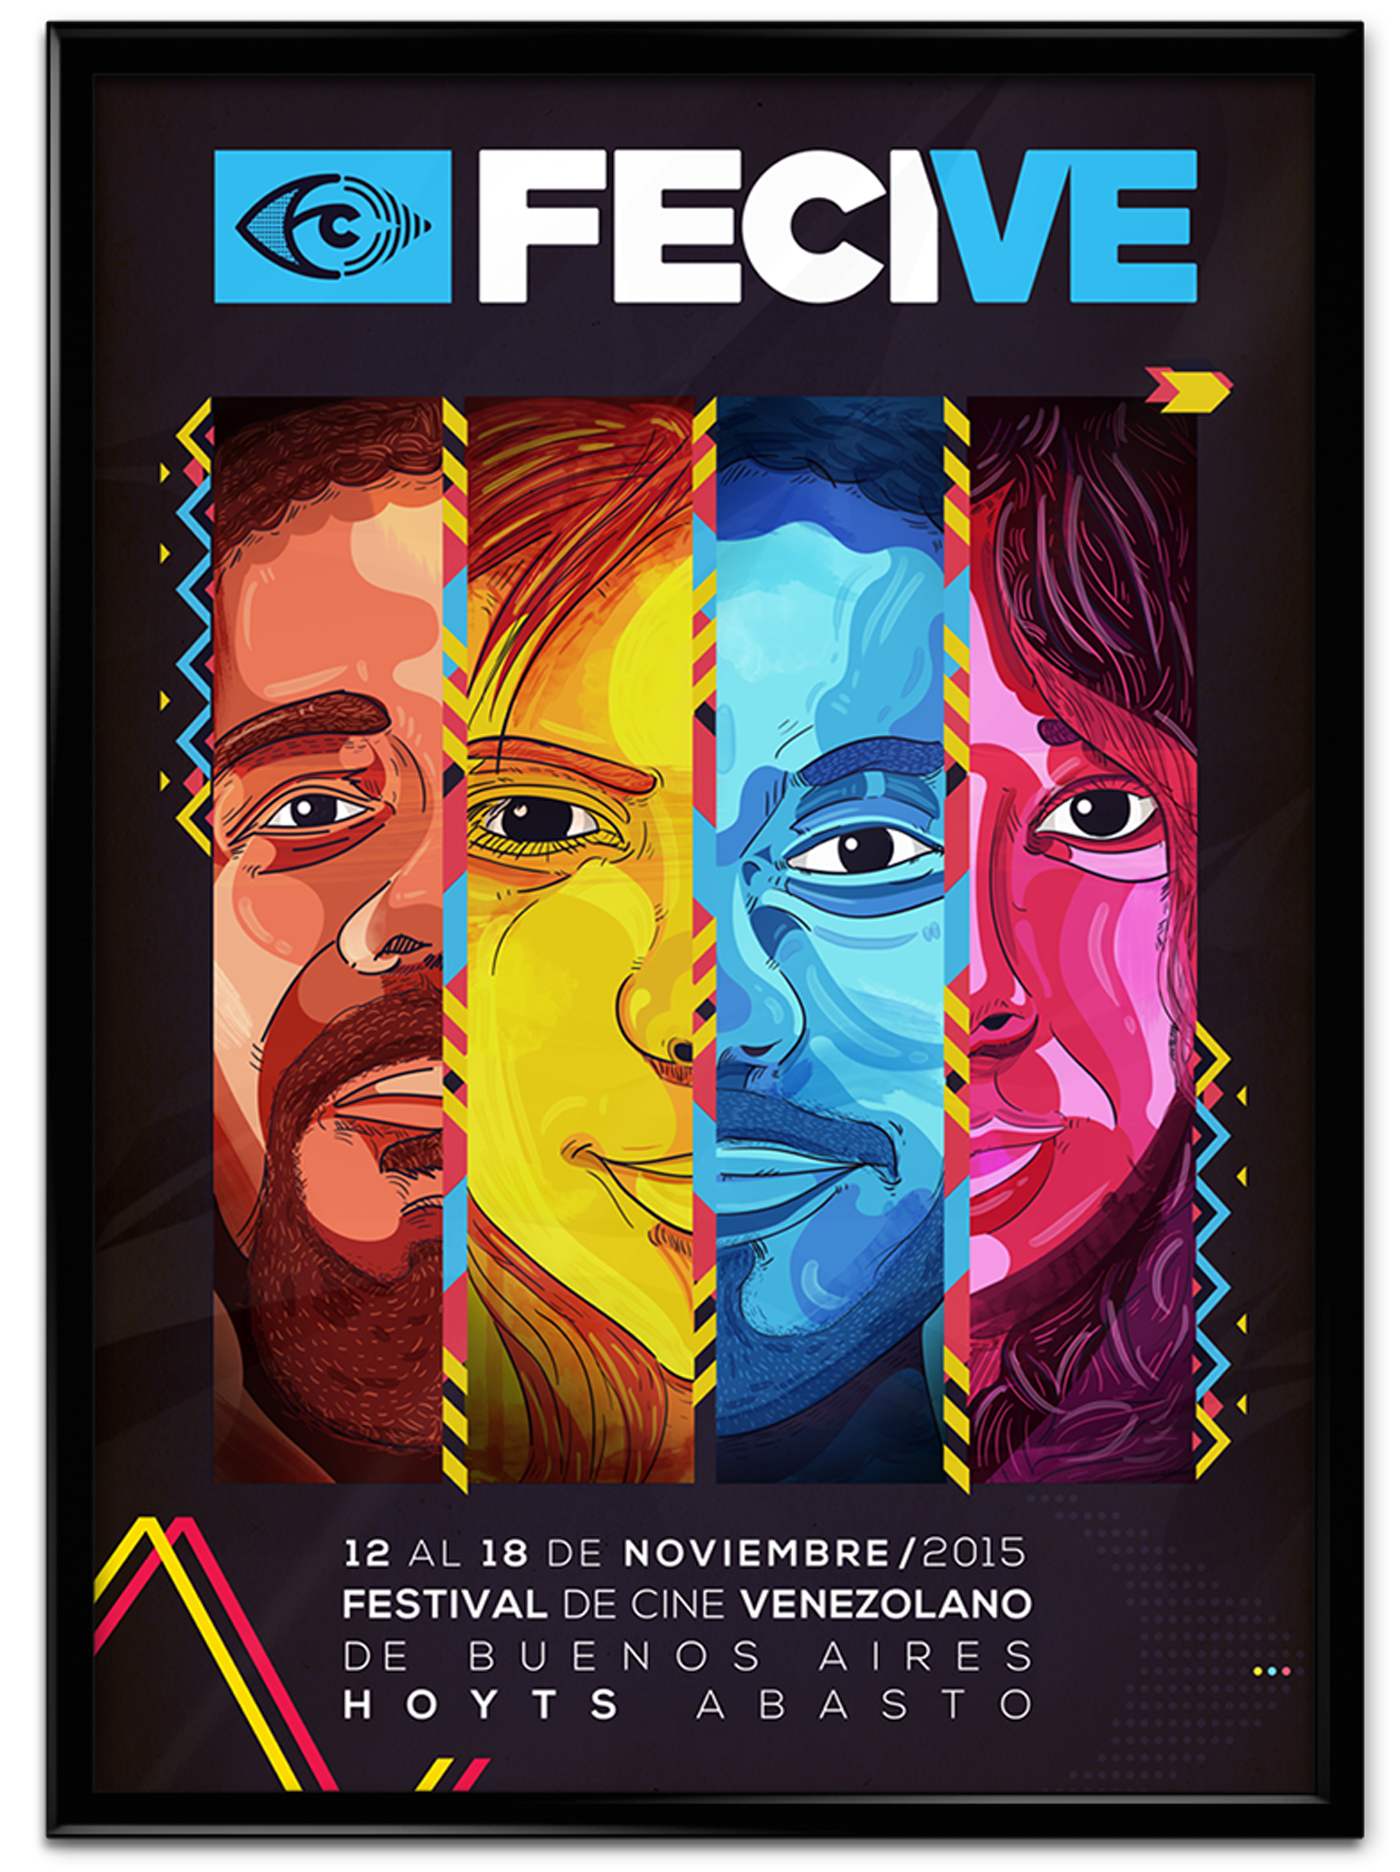 venezuela film festival buenos aires fecive eye movie poster caracas argentina pelicula wacom